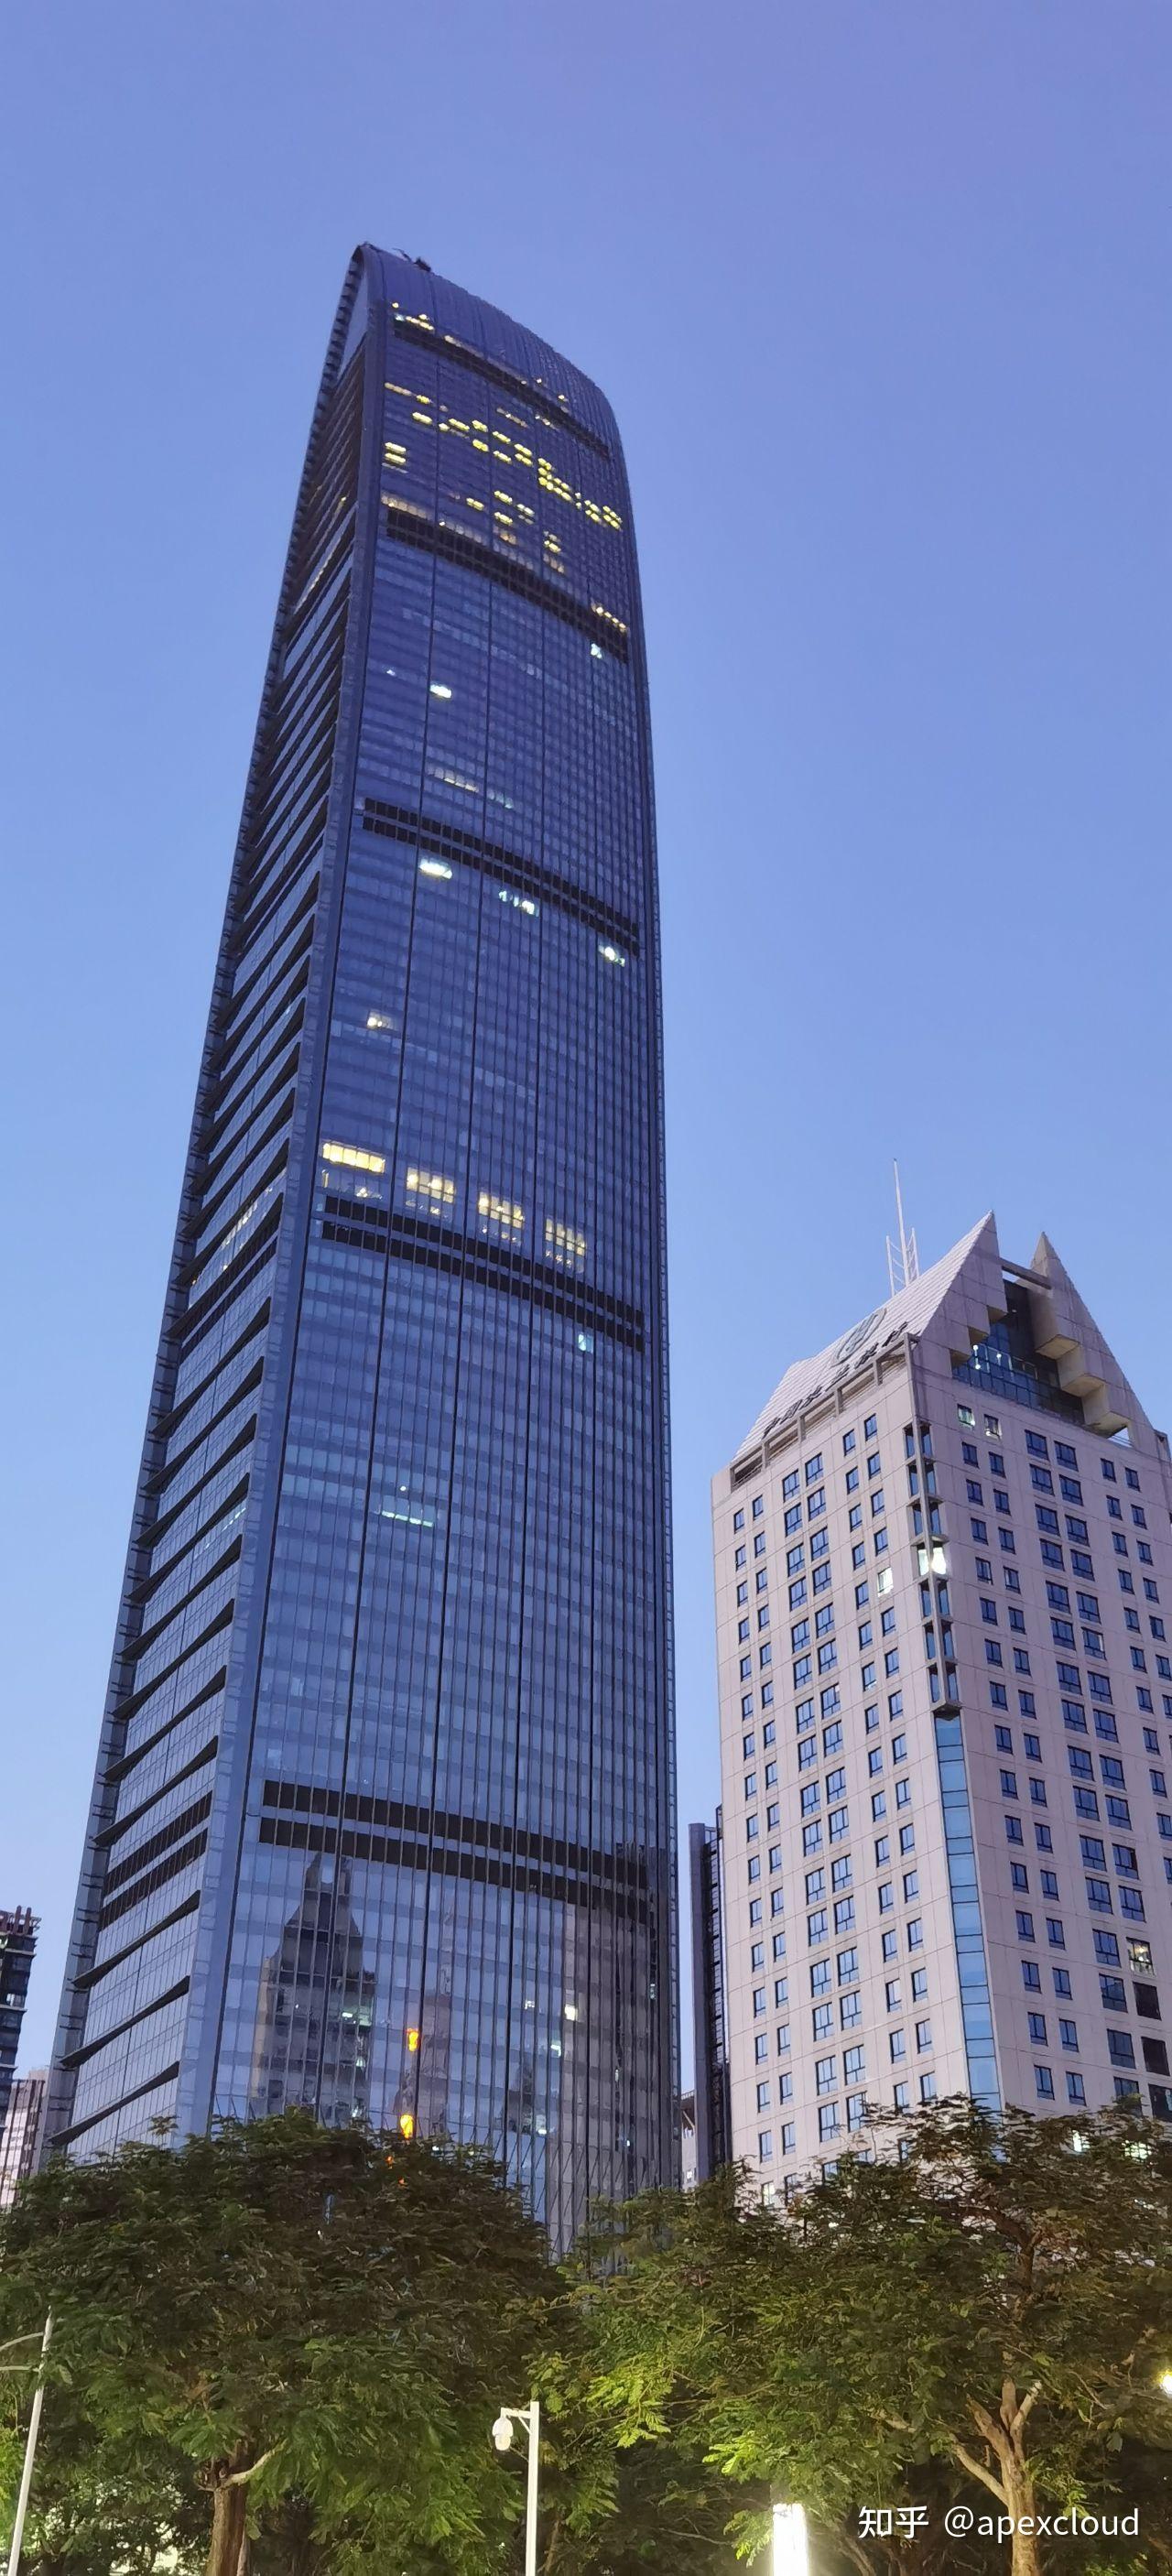 京基100大厦在平安金融中心建成之前是深圳第一高楼,位于罗湖区蔡屋围